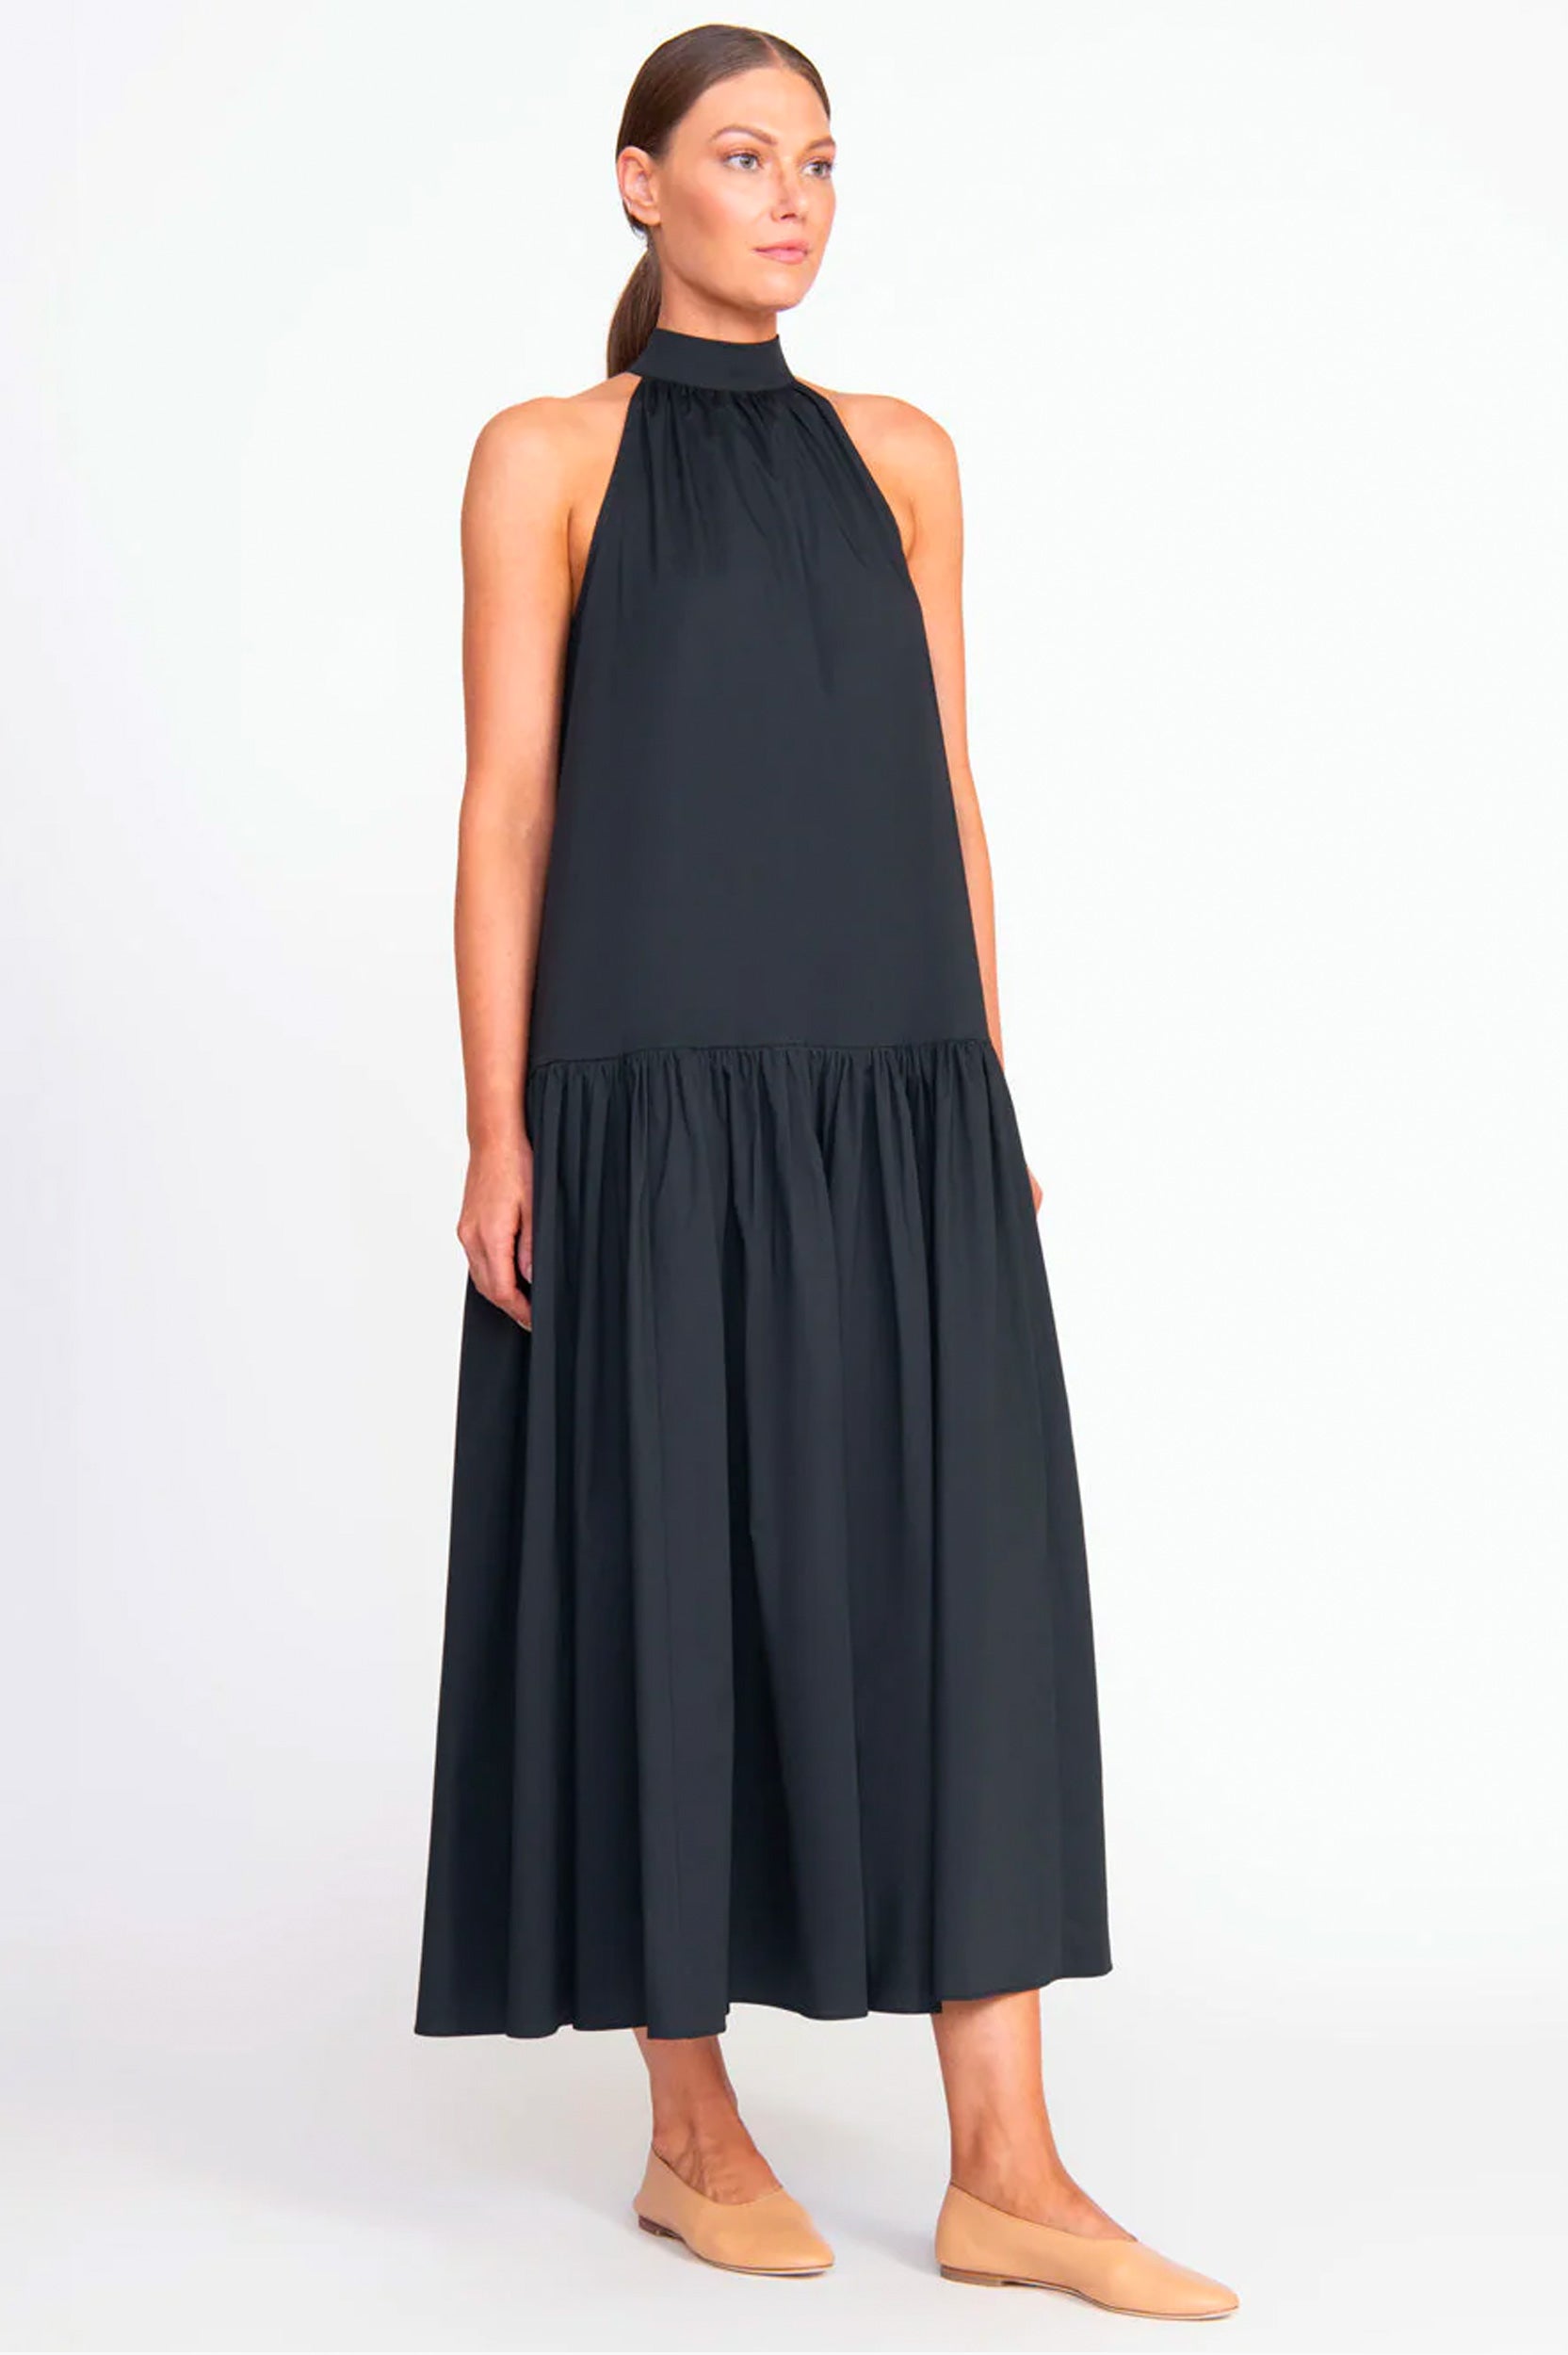 Midi Marlowe Dress in Black